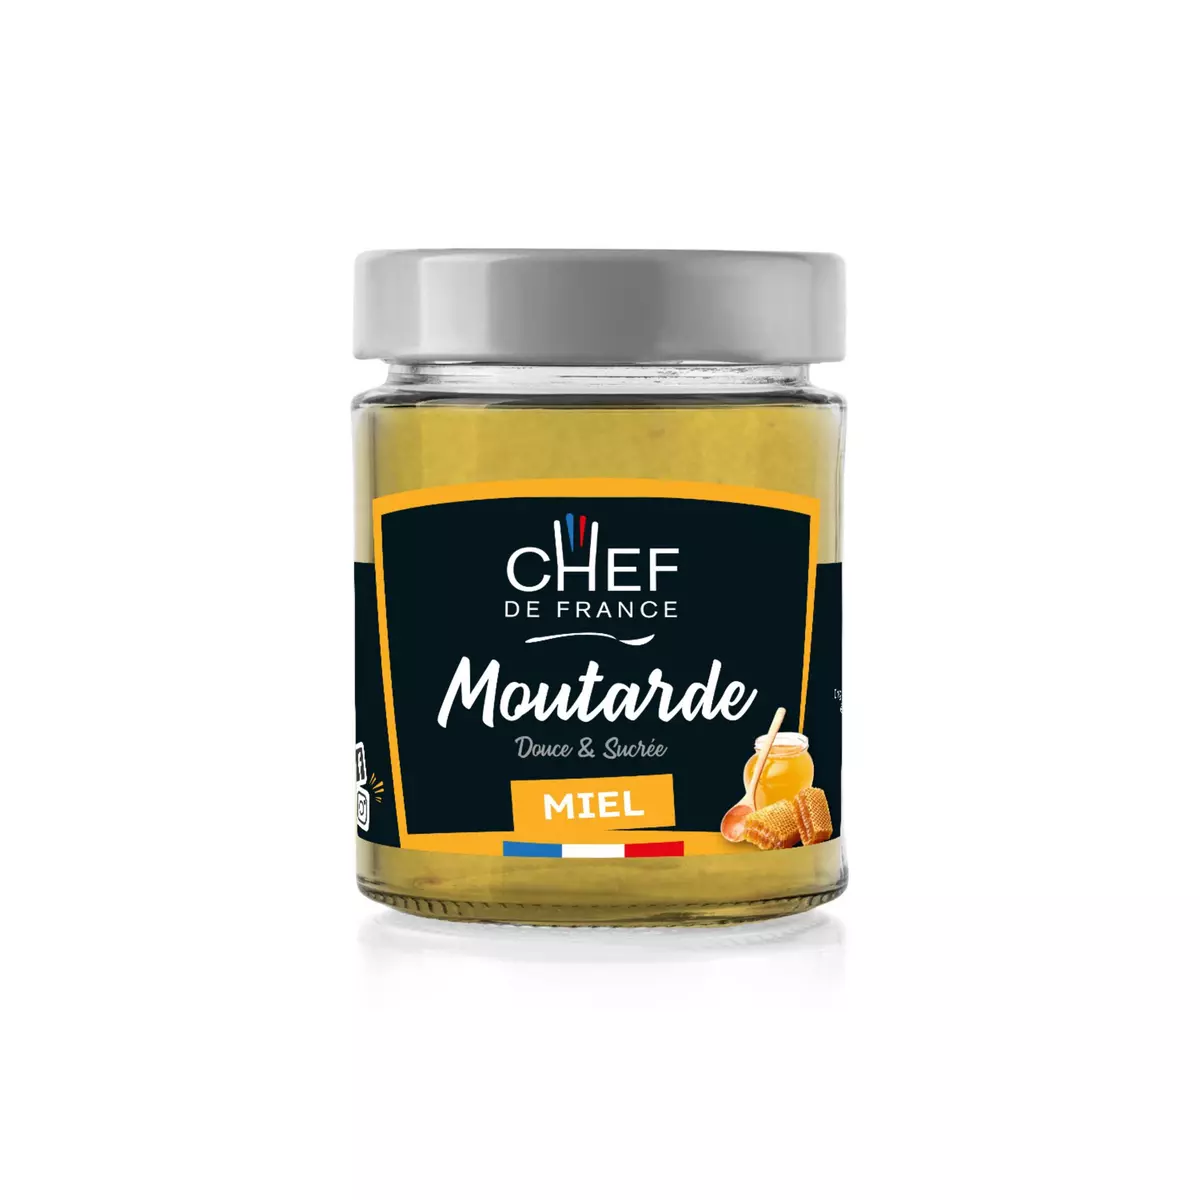 CHEF DE FRANCE Moutarde douce et sucrée au miel de montagne 190g